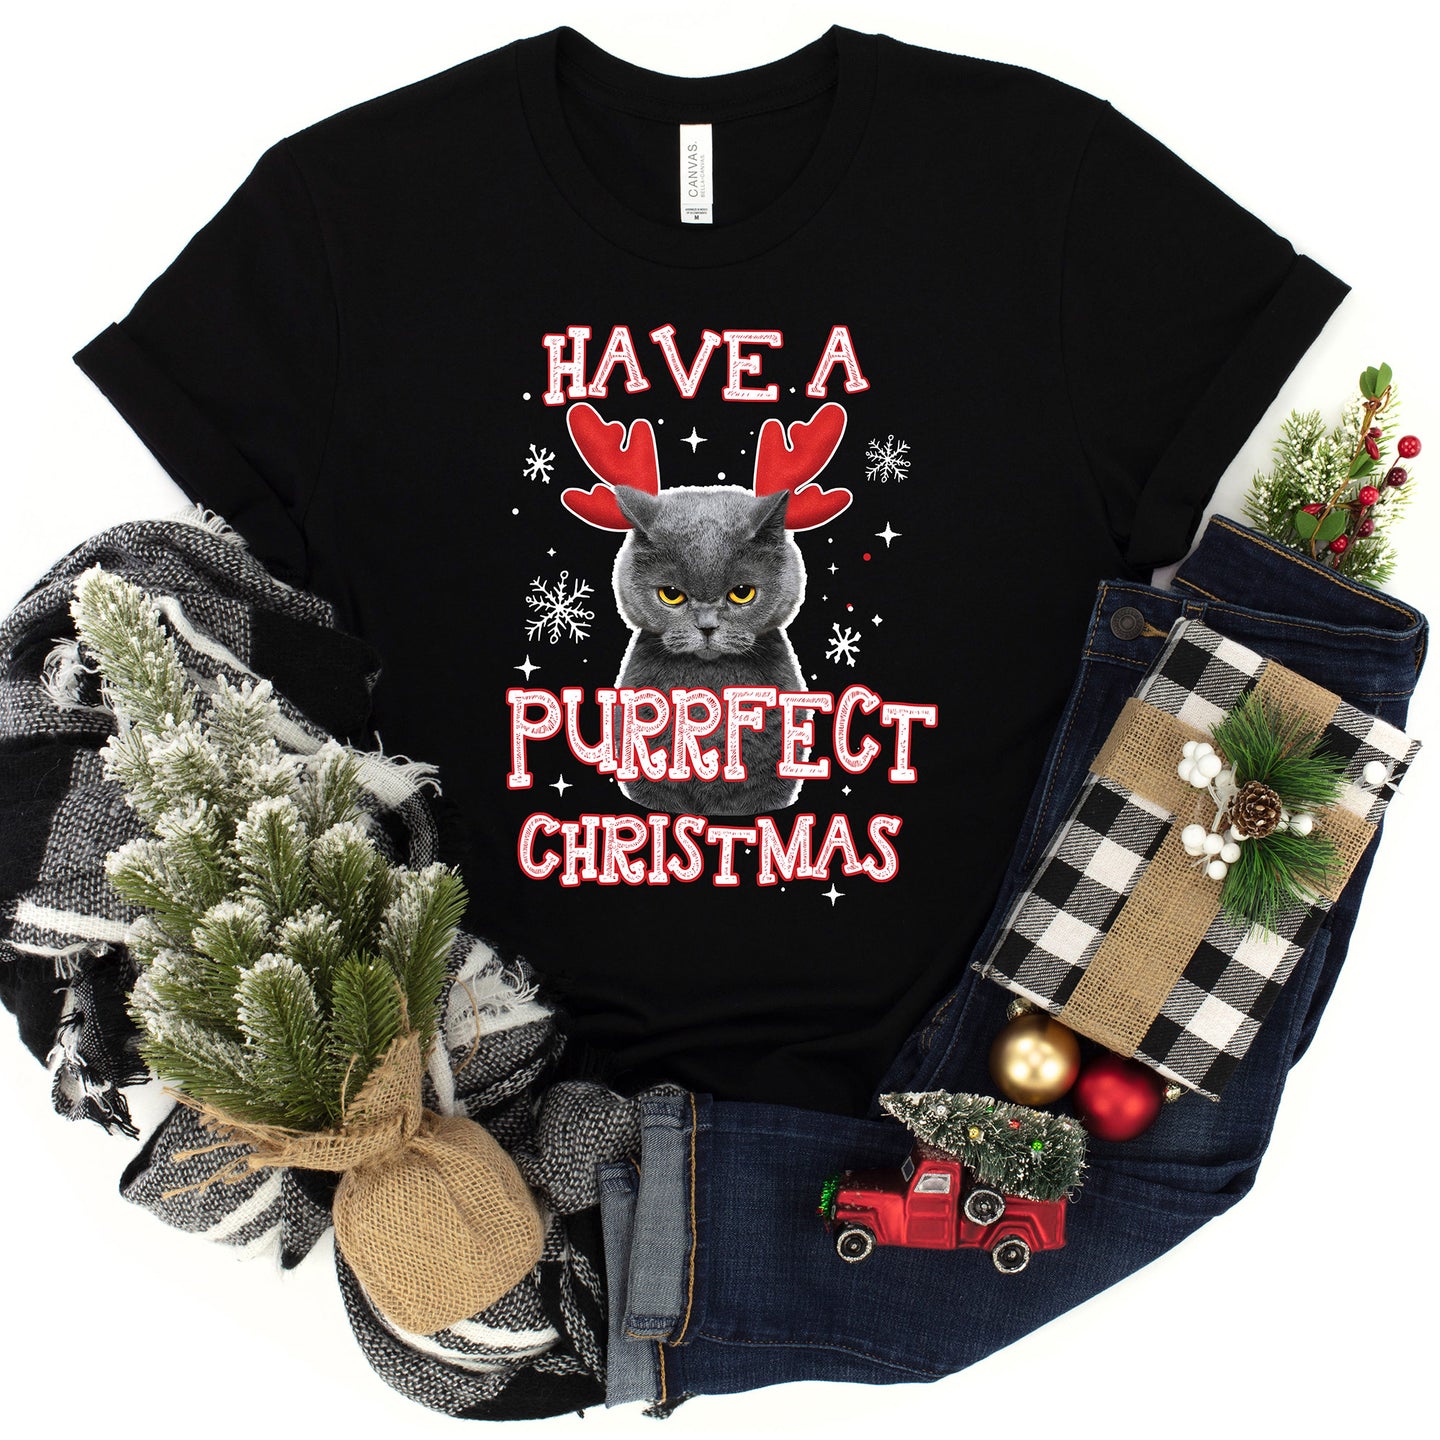 Purrfect Christmas T-shirt, Christmas Tee